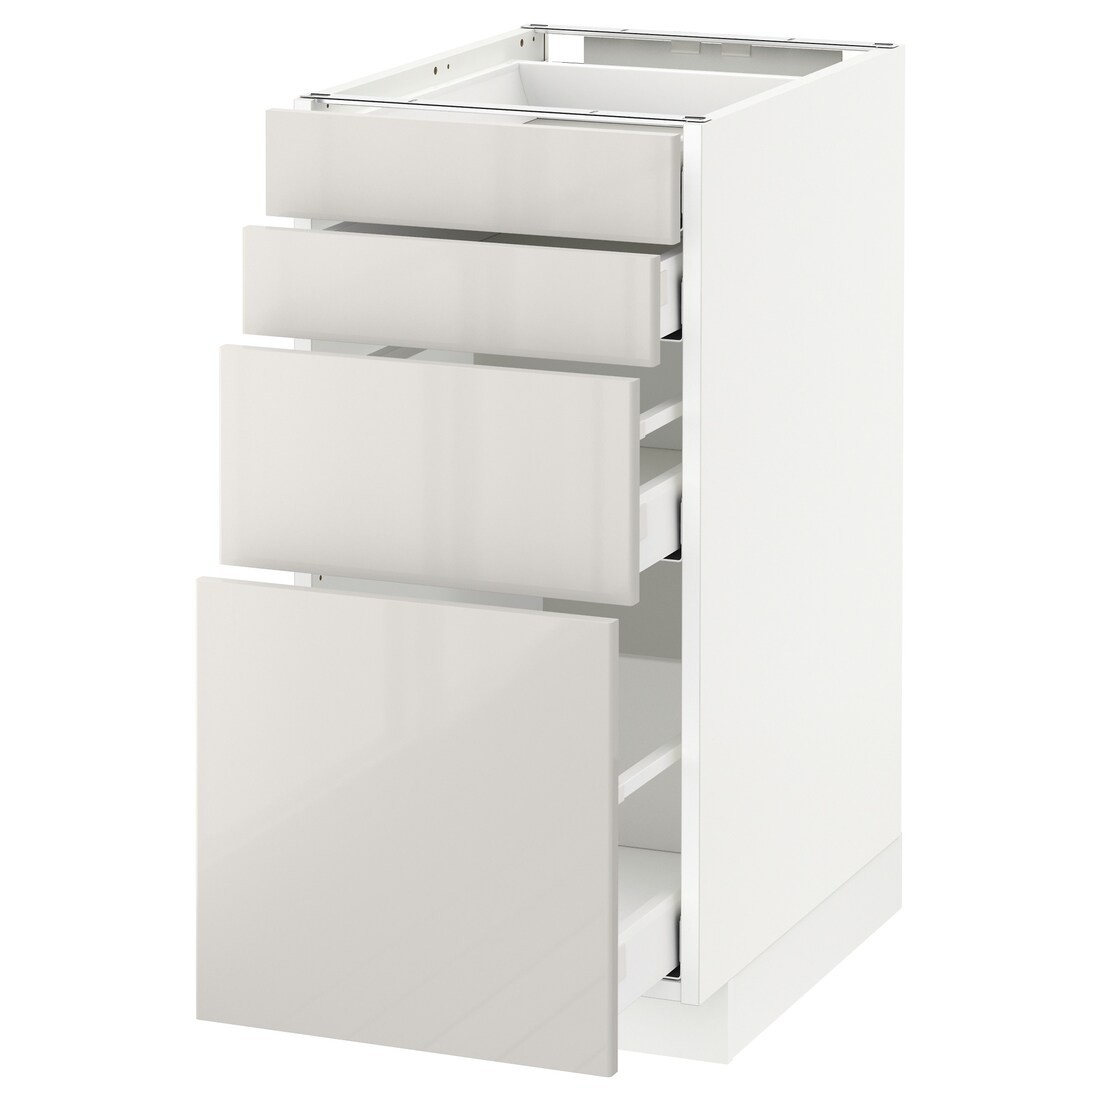 IKEA METOD МЕТОД / MAXIMERA МАКСИМЕРА Напольный шкаф с ящиками, белый / Ringhult светло-серый, 40x60 см 19142504 191.425.04